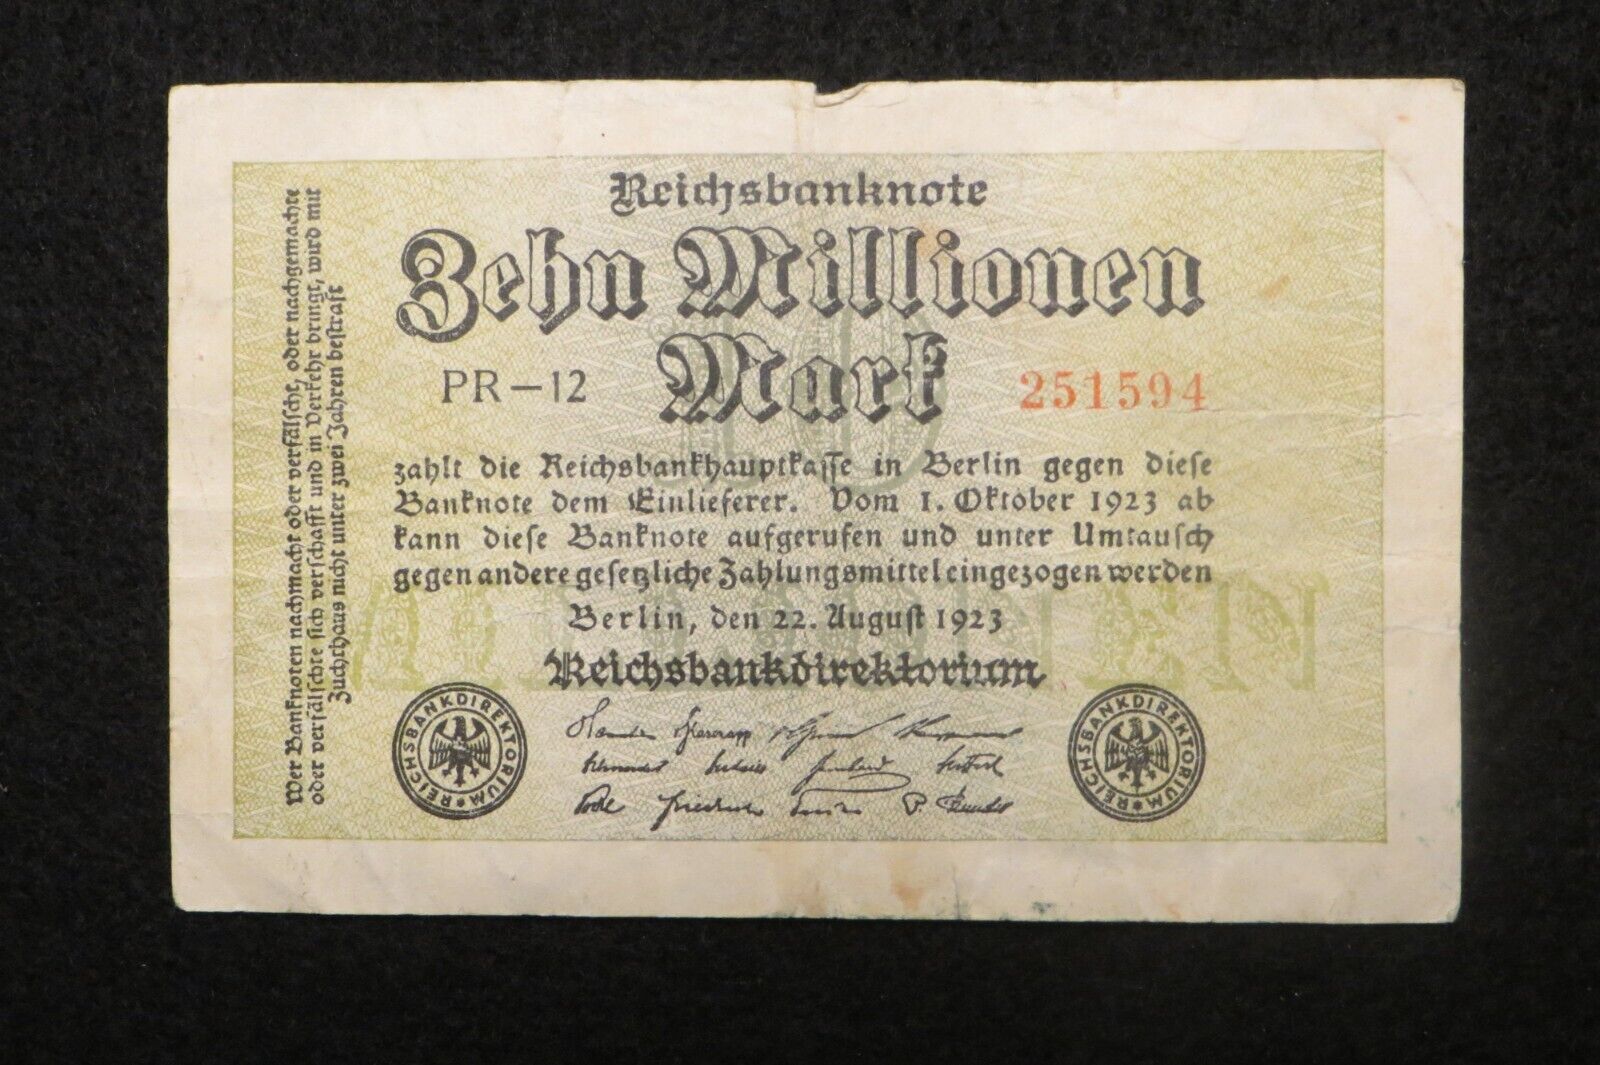 REICHSBANKNOTE - Hyper-Inflation,  3-Million Mark Note -  Aug 22, 1923   (4772)